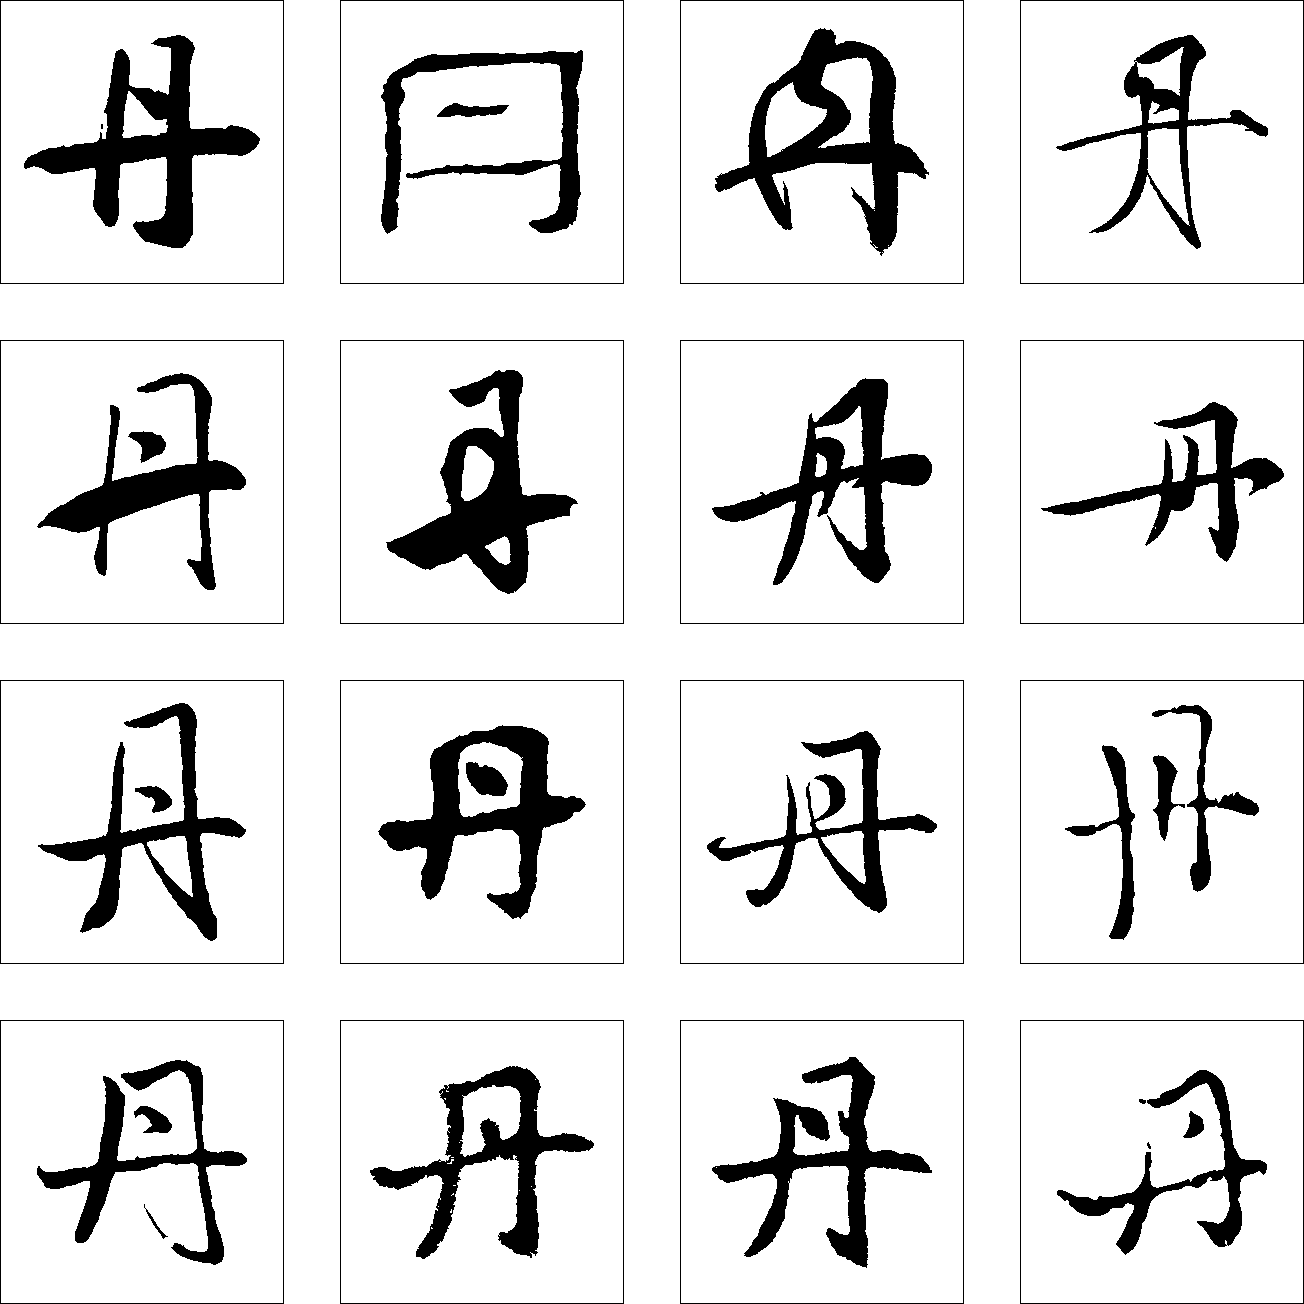 晓字单字书法素材中国风字体源文件下载可商用